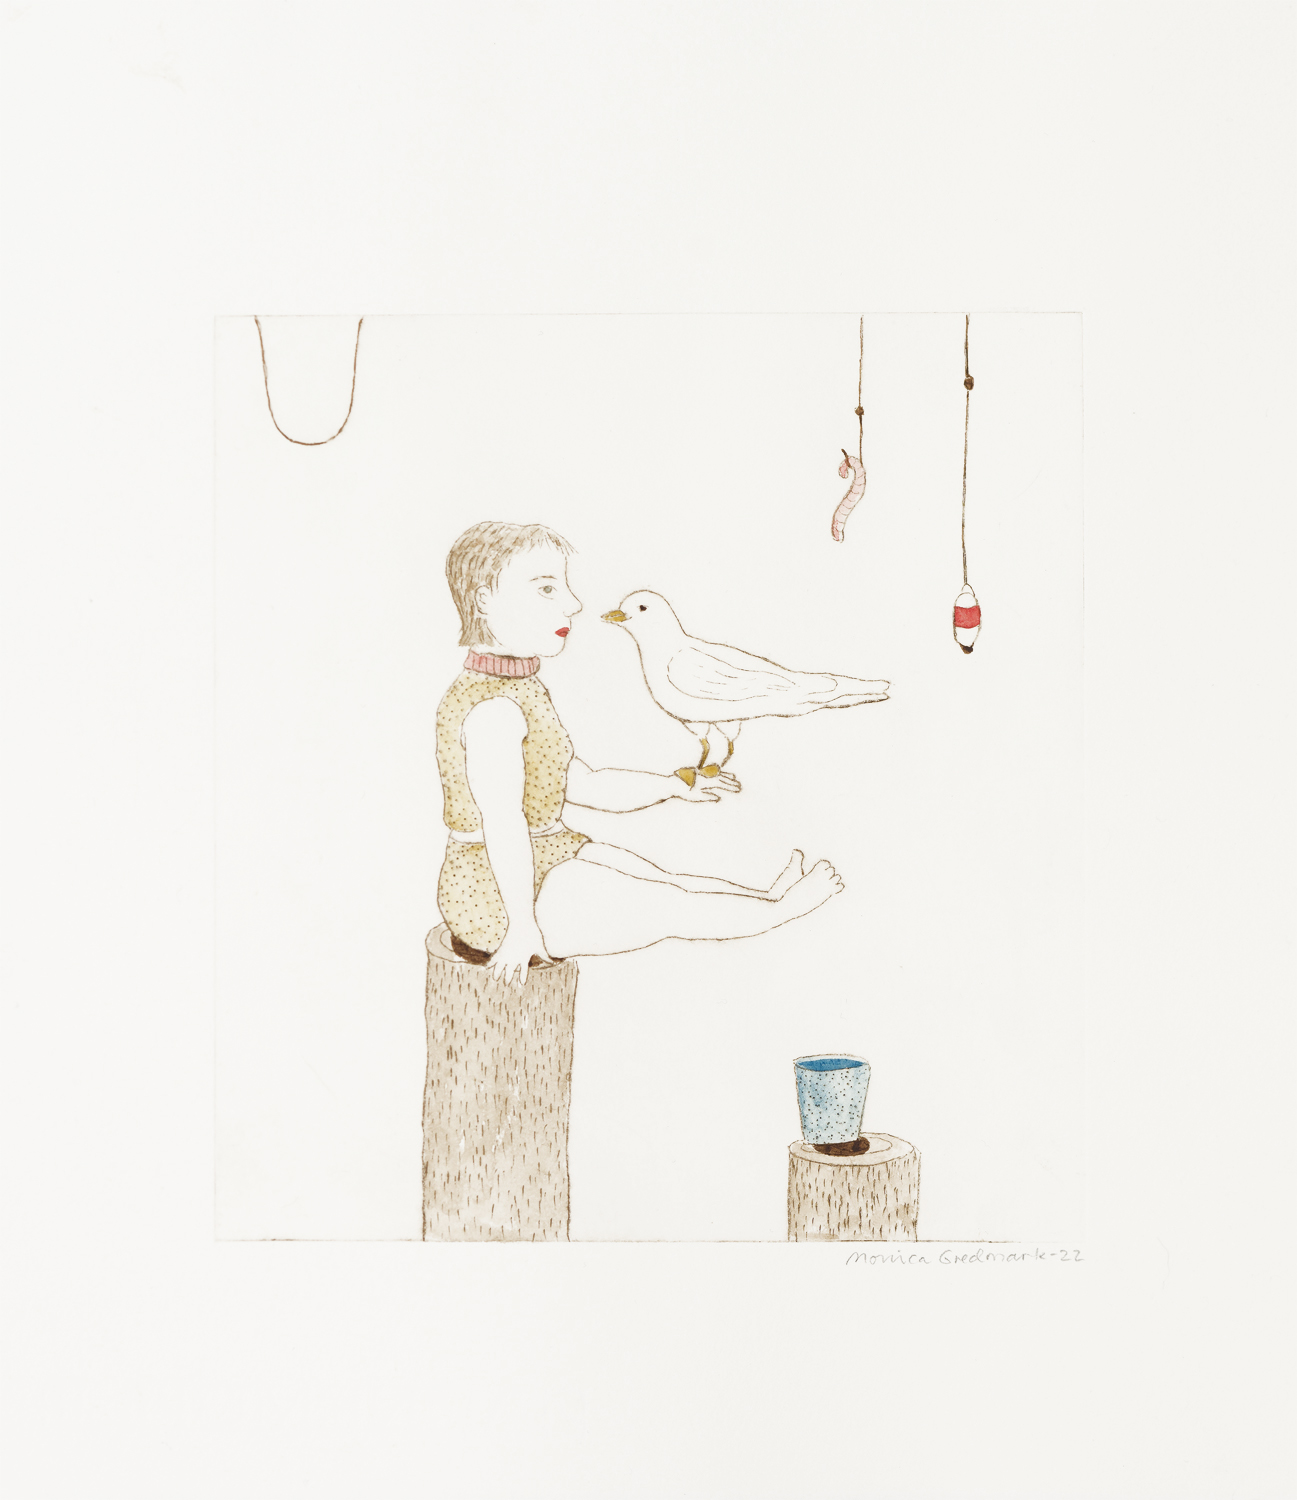 Monica Gredmark, Benämning: MG1, ”En fiskmås i min hand” Handkolorerad gravyr, Bildmått: H 18,5 x B 17,5 cm, Pappersmått: H 29 x B 26,5, upplaga 250